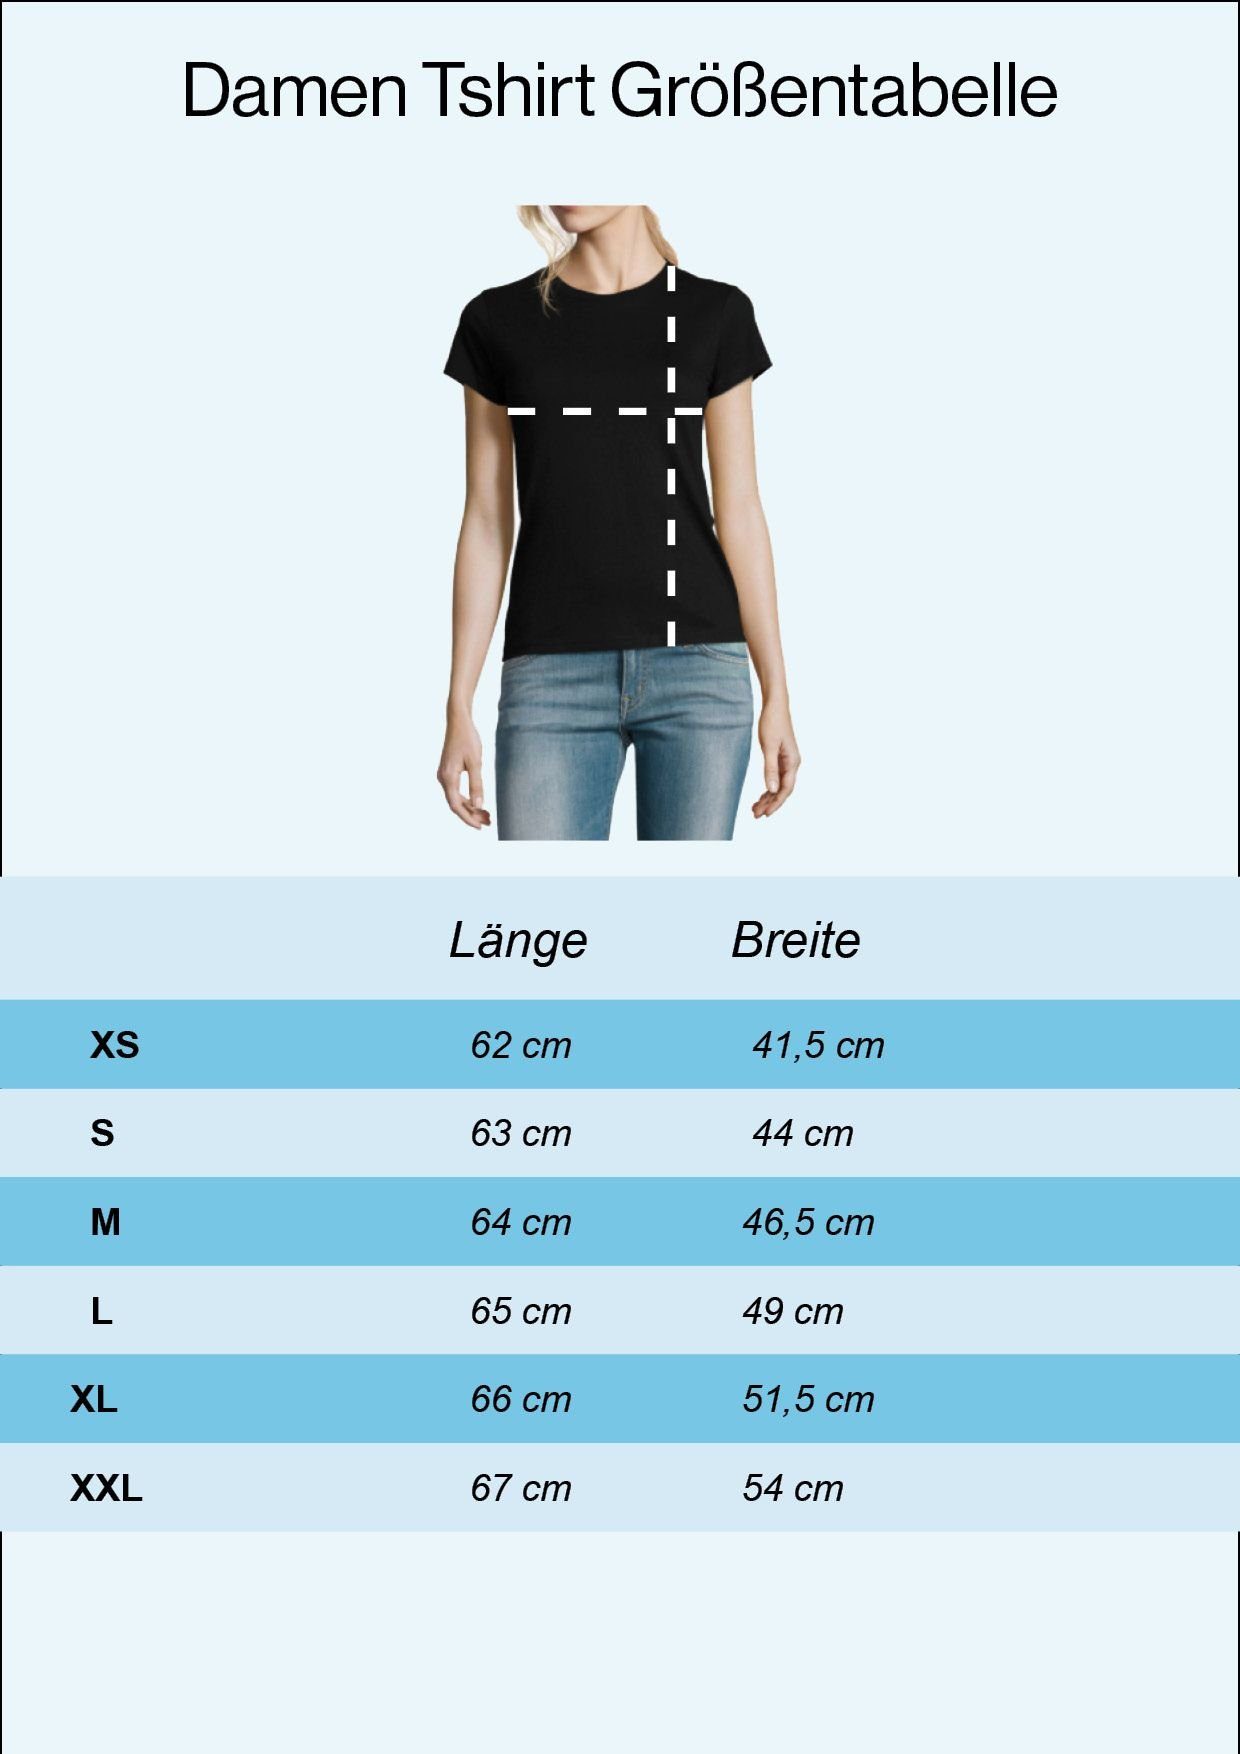 Youth Designz modischem Shirt Herz Deutschland Print mit Damen T-Shirt Schwarz